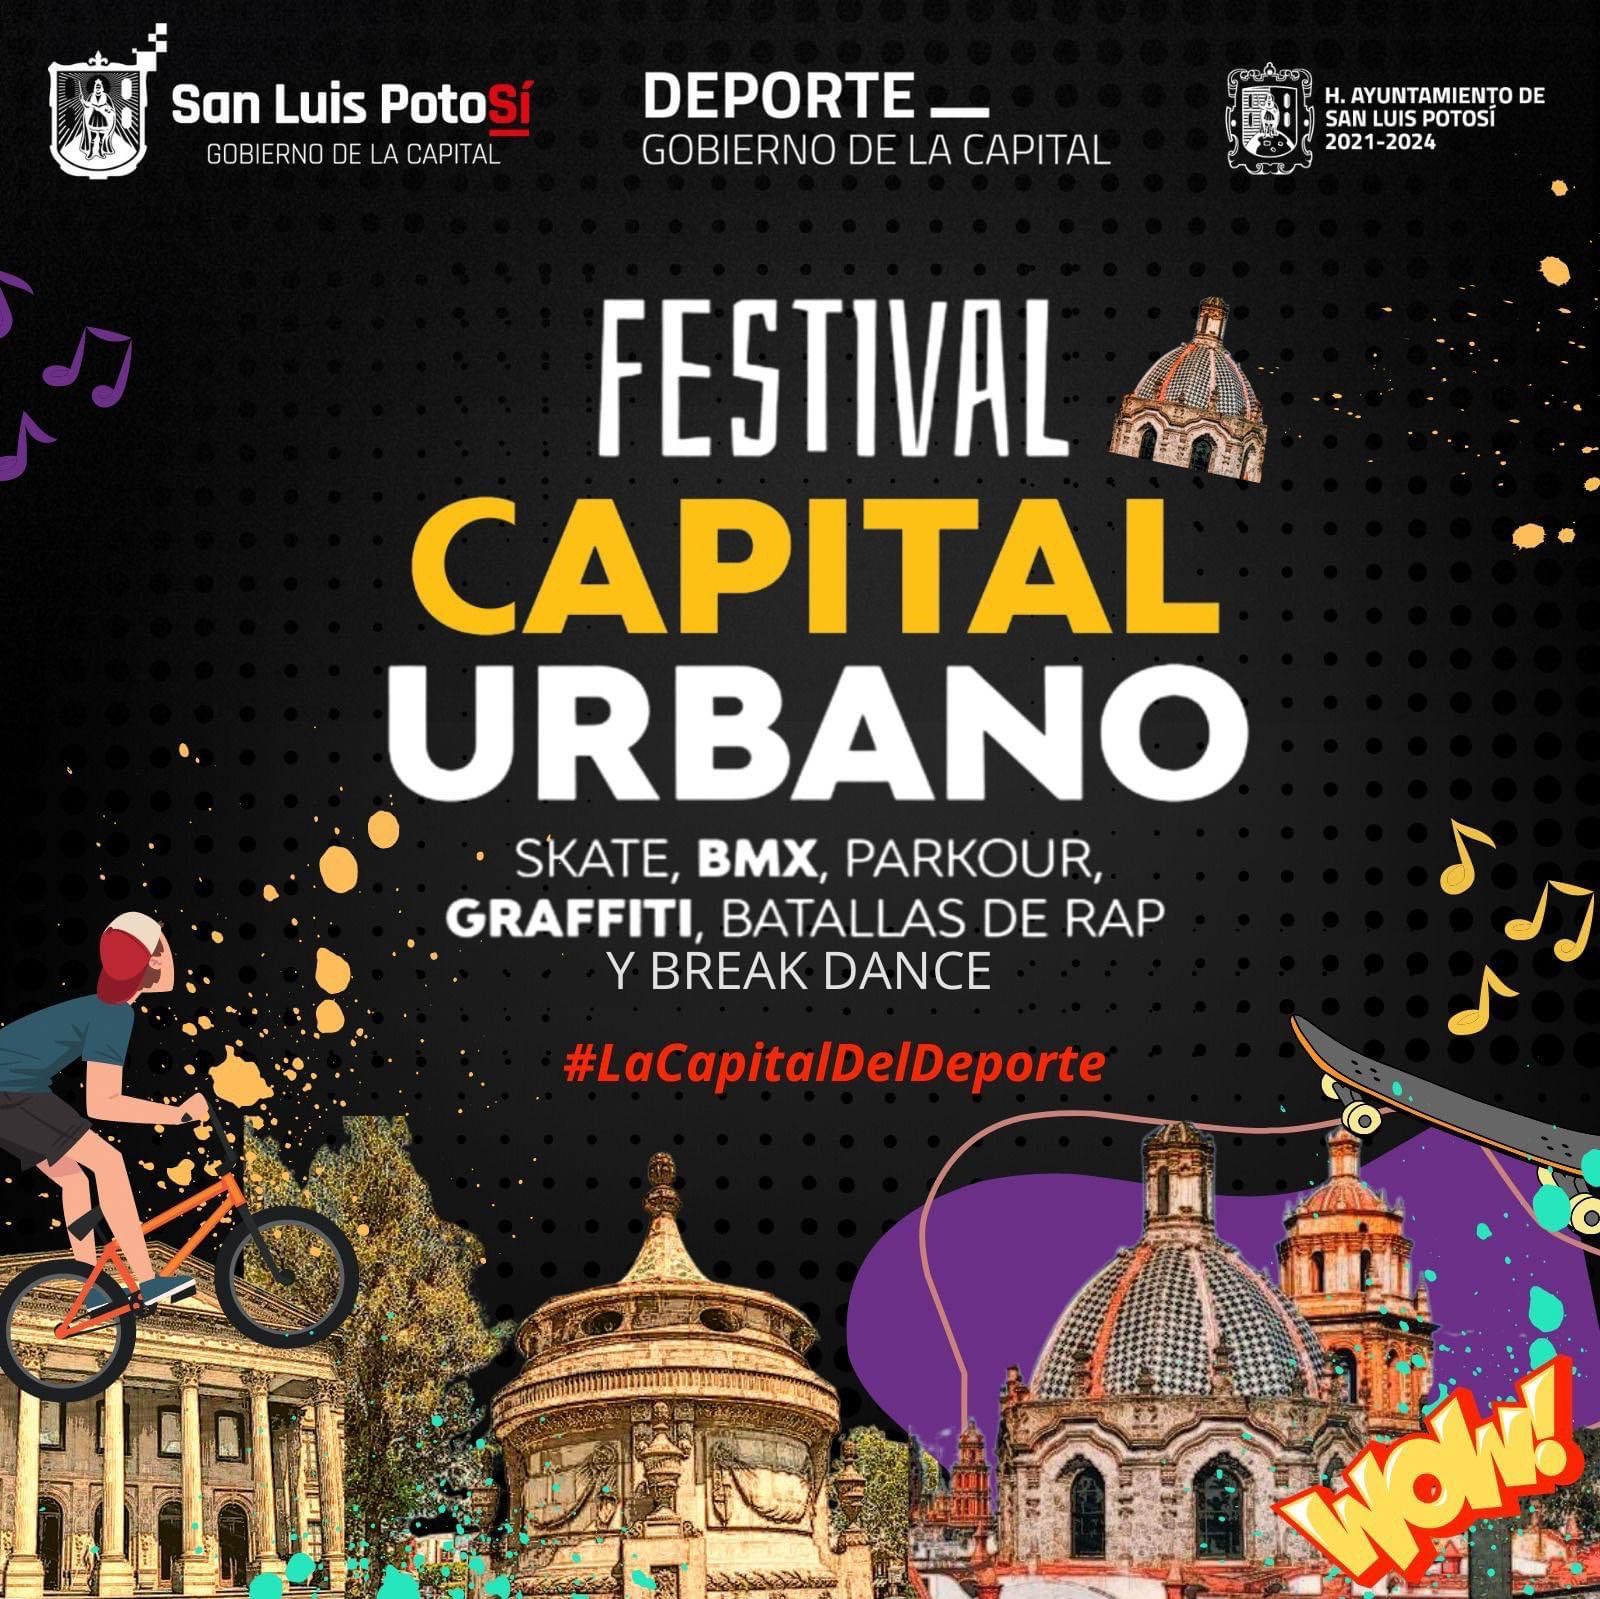  El tricampeón Aczino se presenta en el Festival Capital Urbano de la Capital del Sí